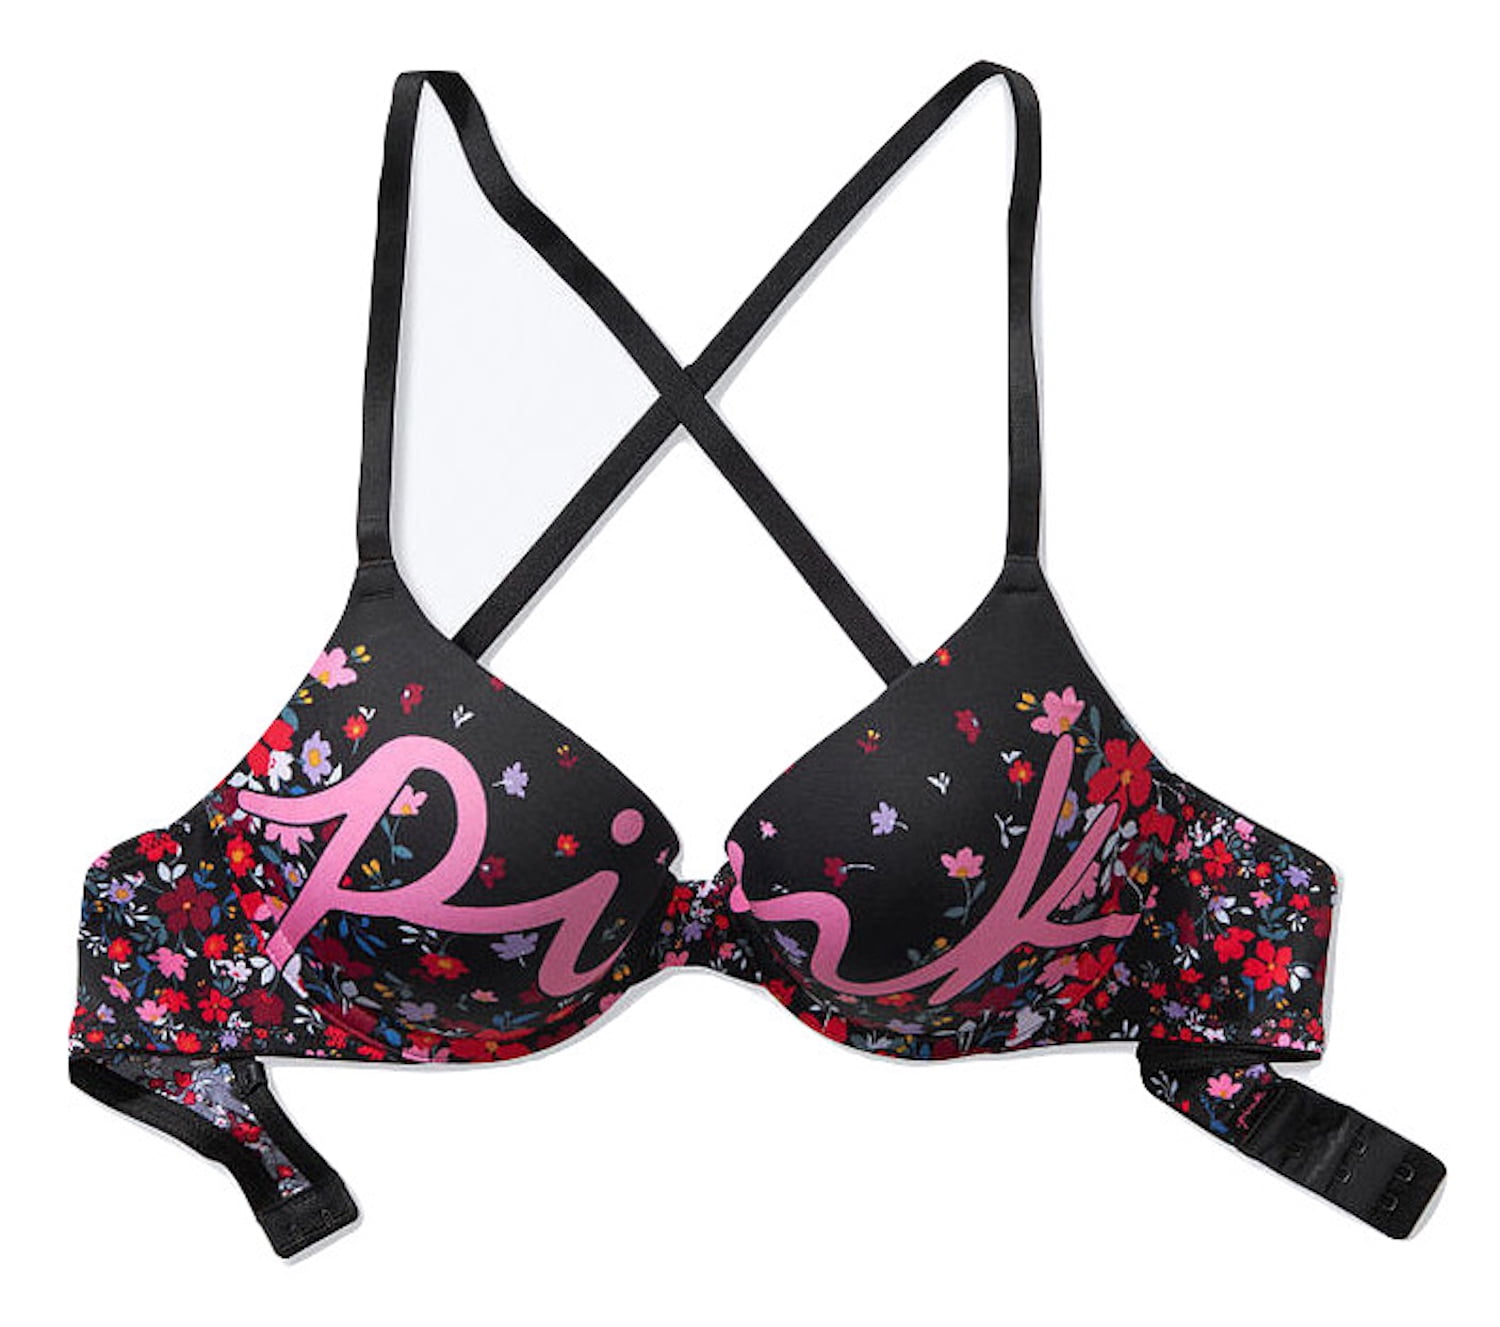 PINK Victoria's Secret, Intimates & Sleepwear, 2 Victoria Secret Pink  Pushup Bras New Size 34c